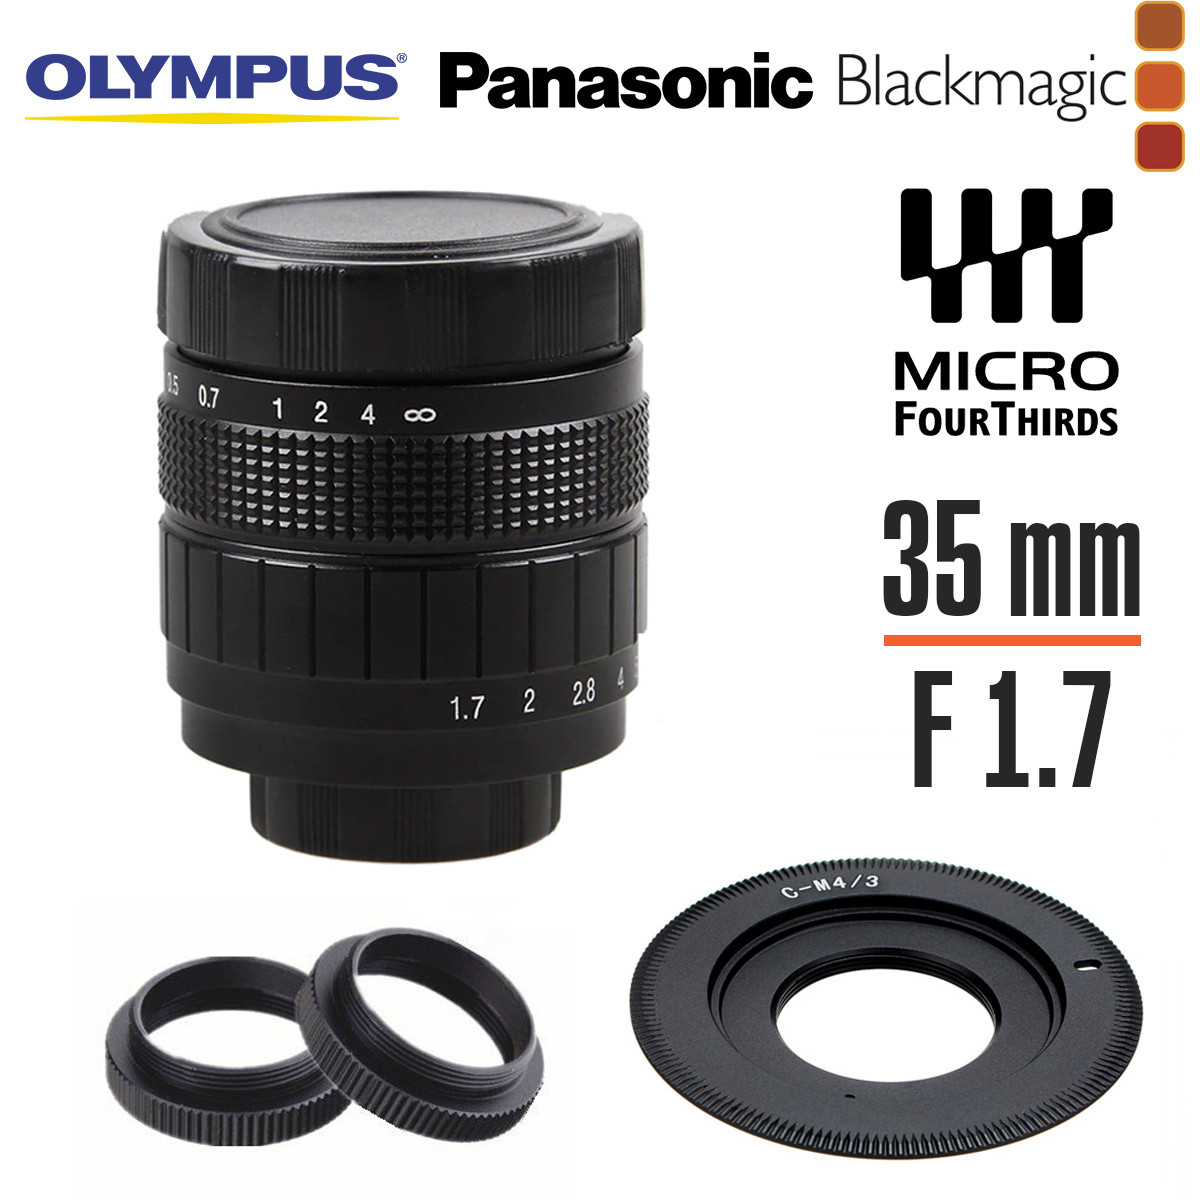 Fujian 35mm f/1.7 світлосильний об'єктив для Panasonic Olympus Blackmagic Micro 4/3 M43 фікс чорний макро